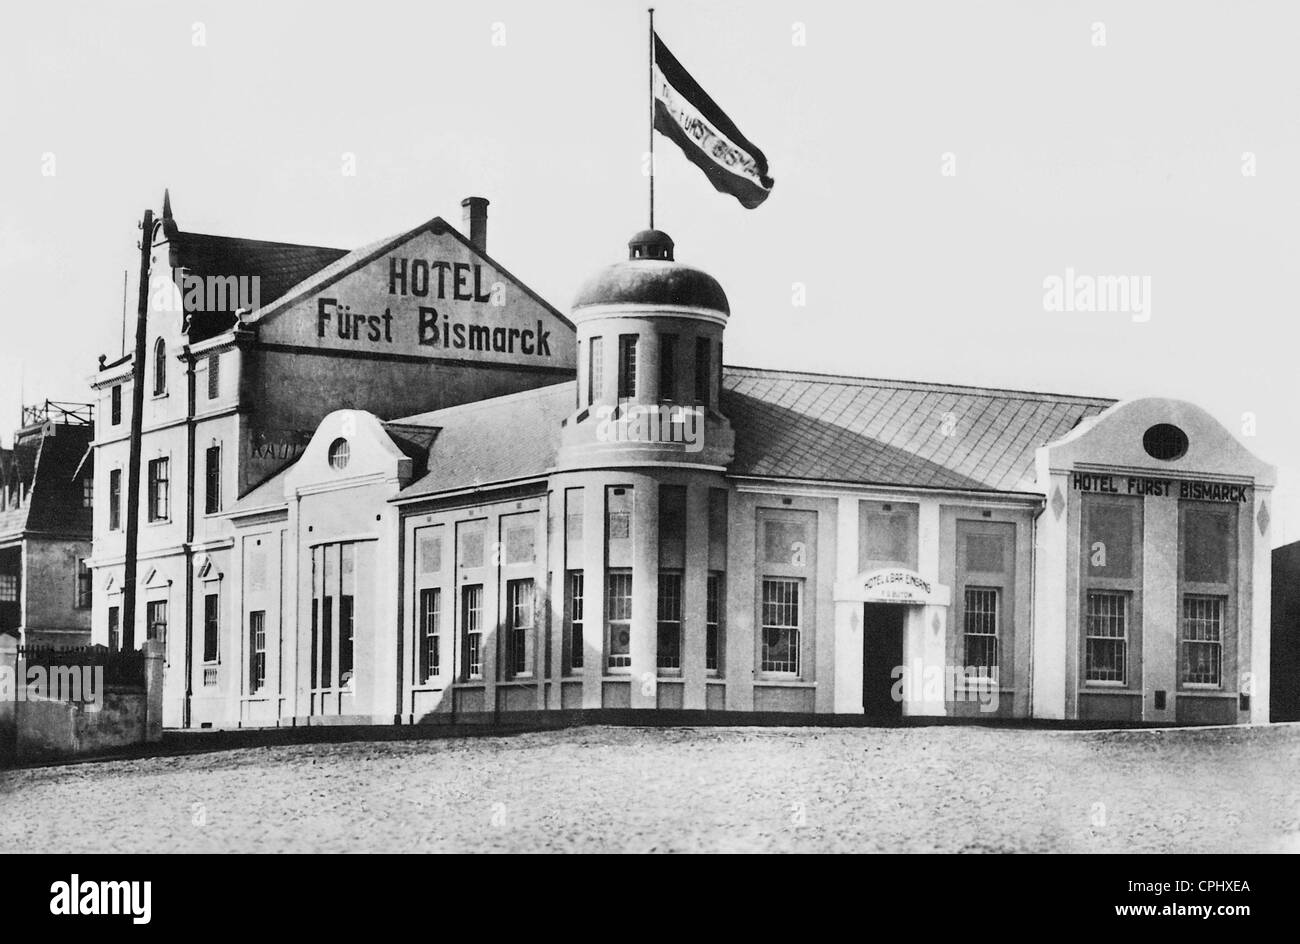 Hotel 'Furst Bismarck' in Swakopmund Stock Photo